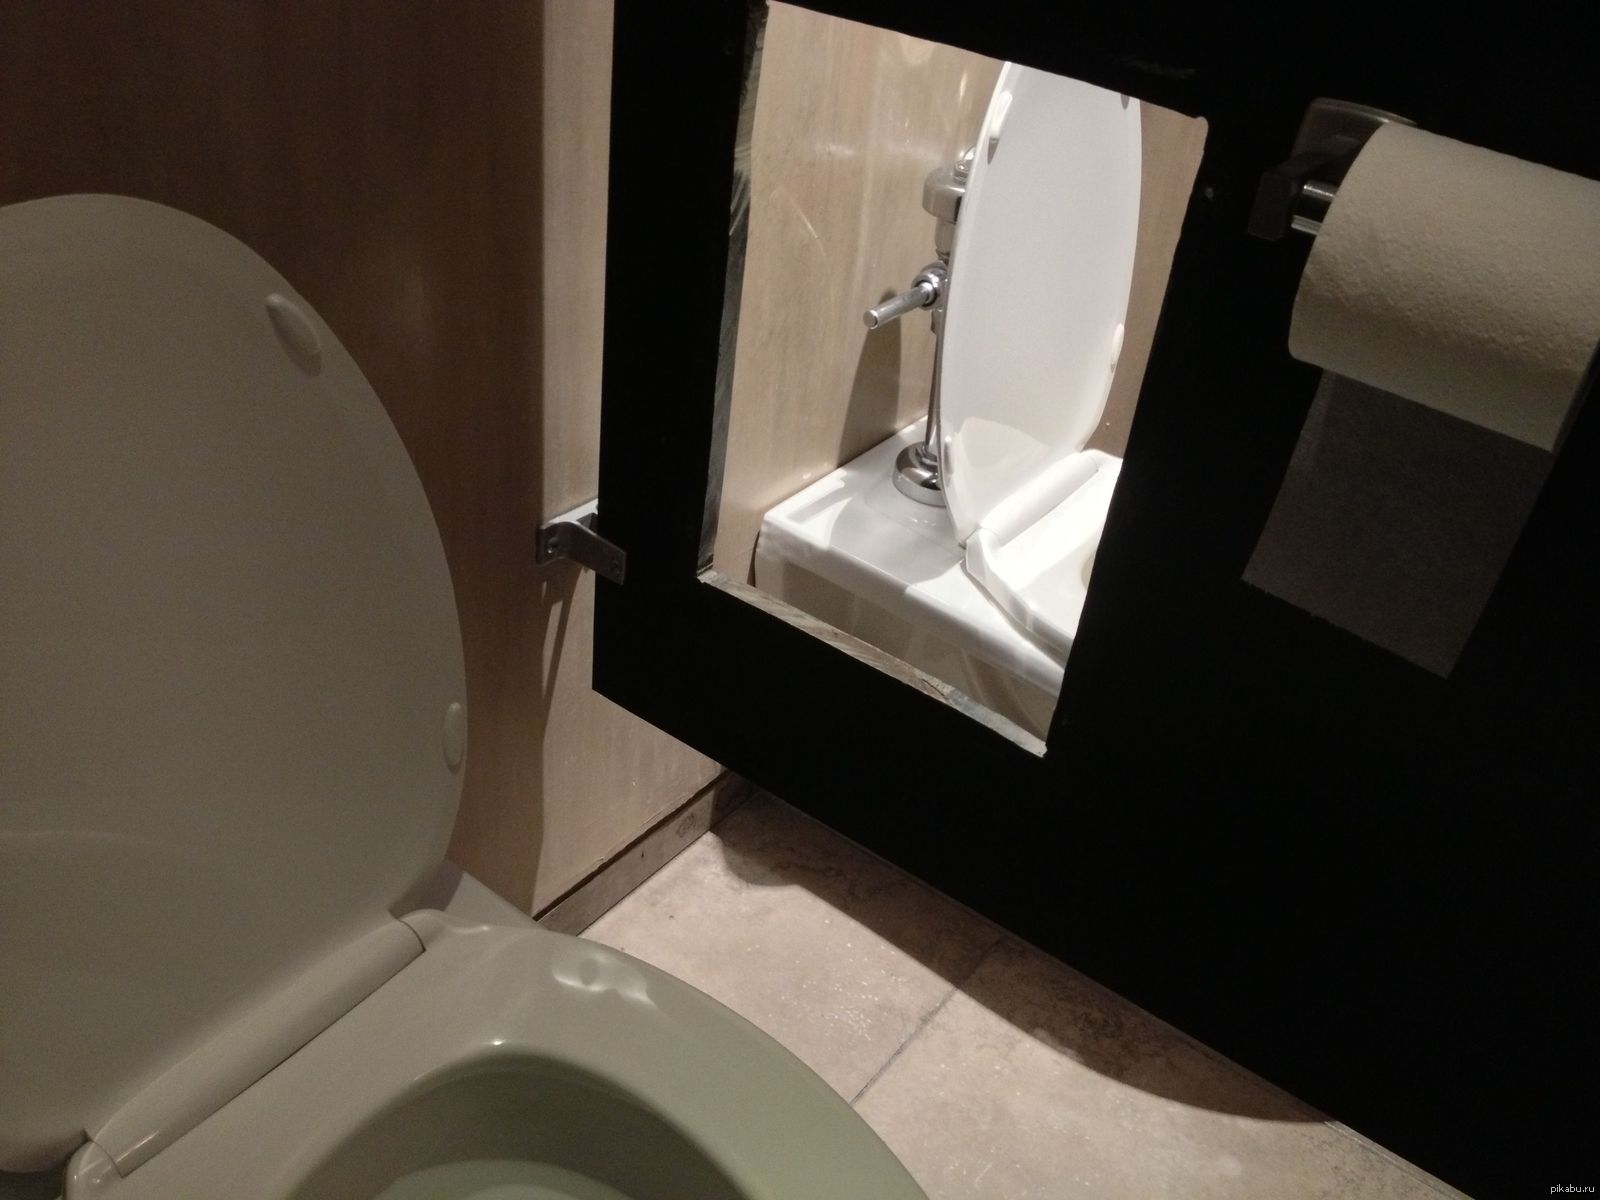 Напротив унитаза. Зеркало в туалете. Приколы на зеркале в туалете. Унитаз и зеркало. Зеркало напротив туалета.